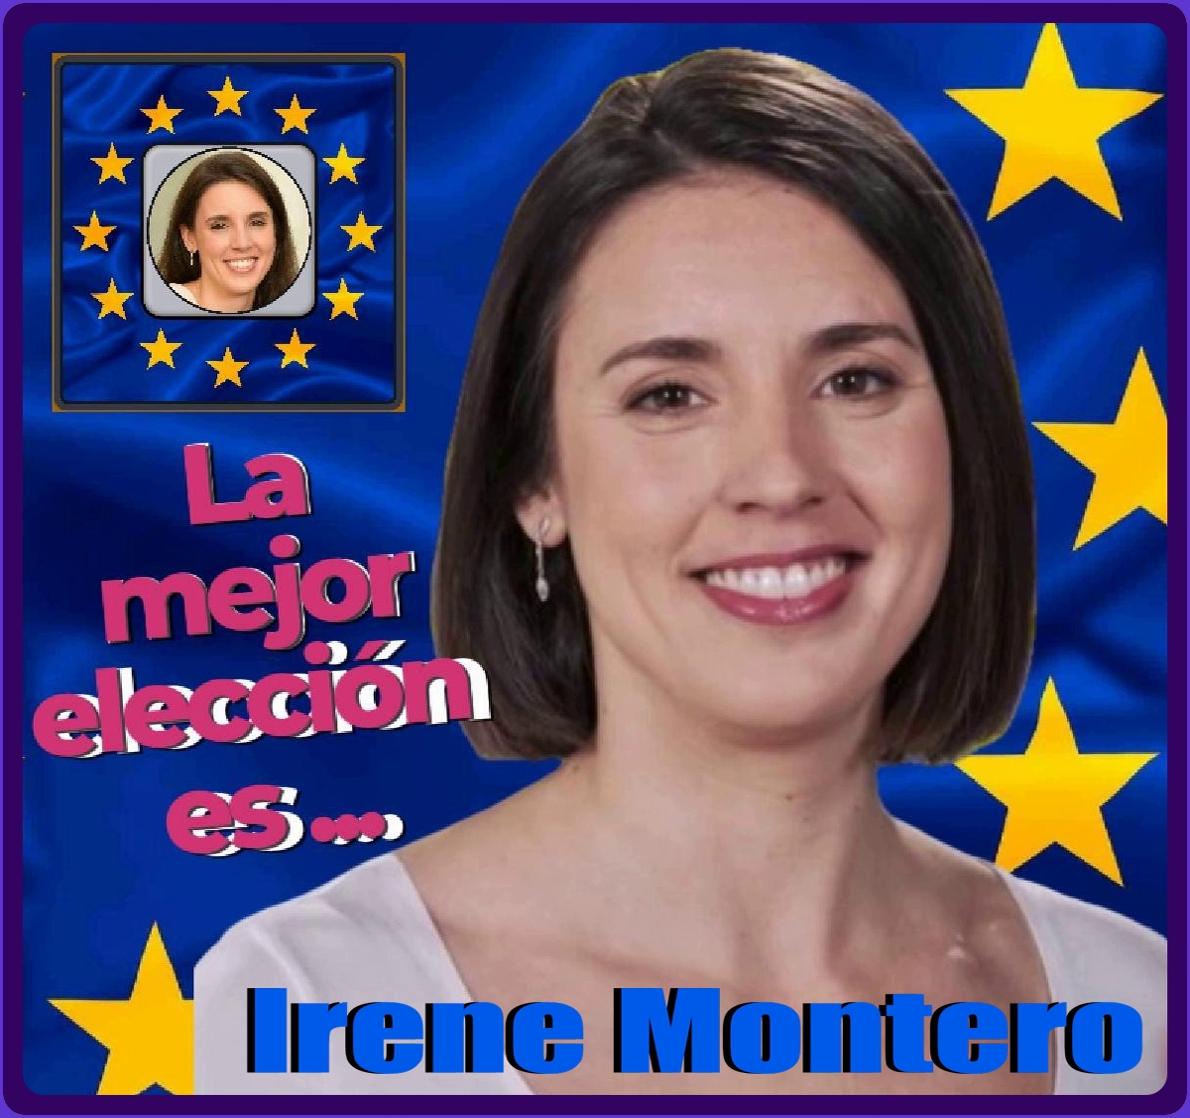 🔸La mejor elección es @IreneMontero
Sin ninguna duda . 📷#EleccionesEuropeas #AhoraMasQueNunca #IreneMonteroAEuropa #SiSePuede #VotaPodemos #UEelections2024